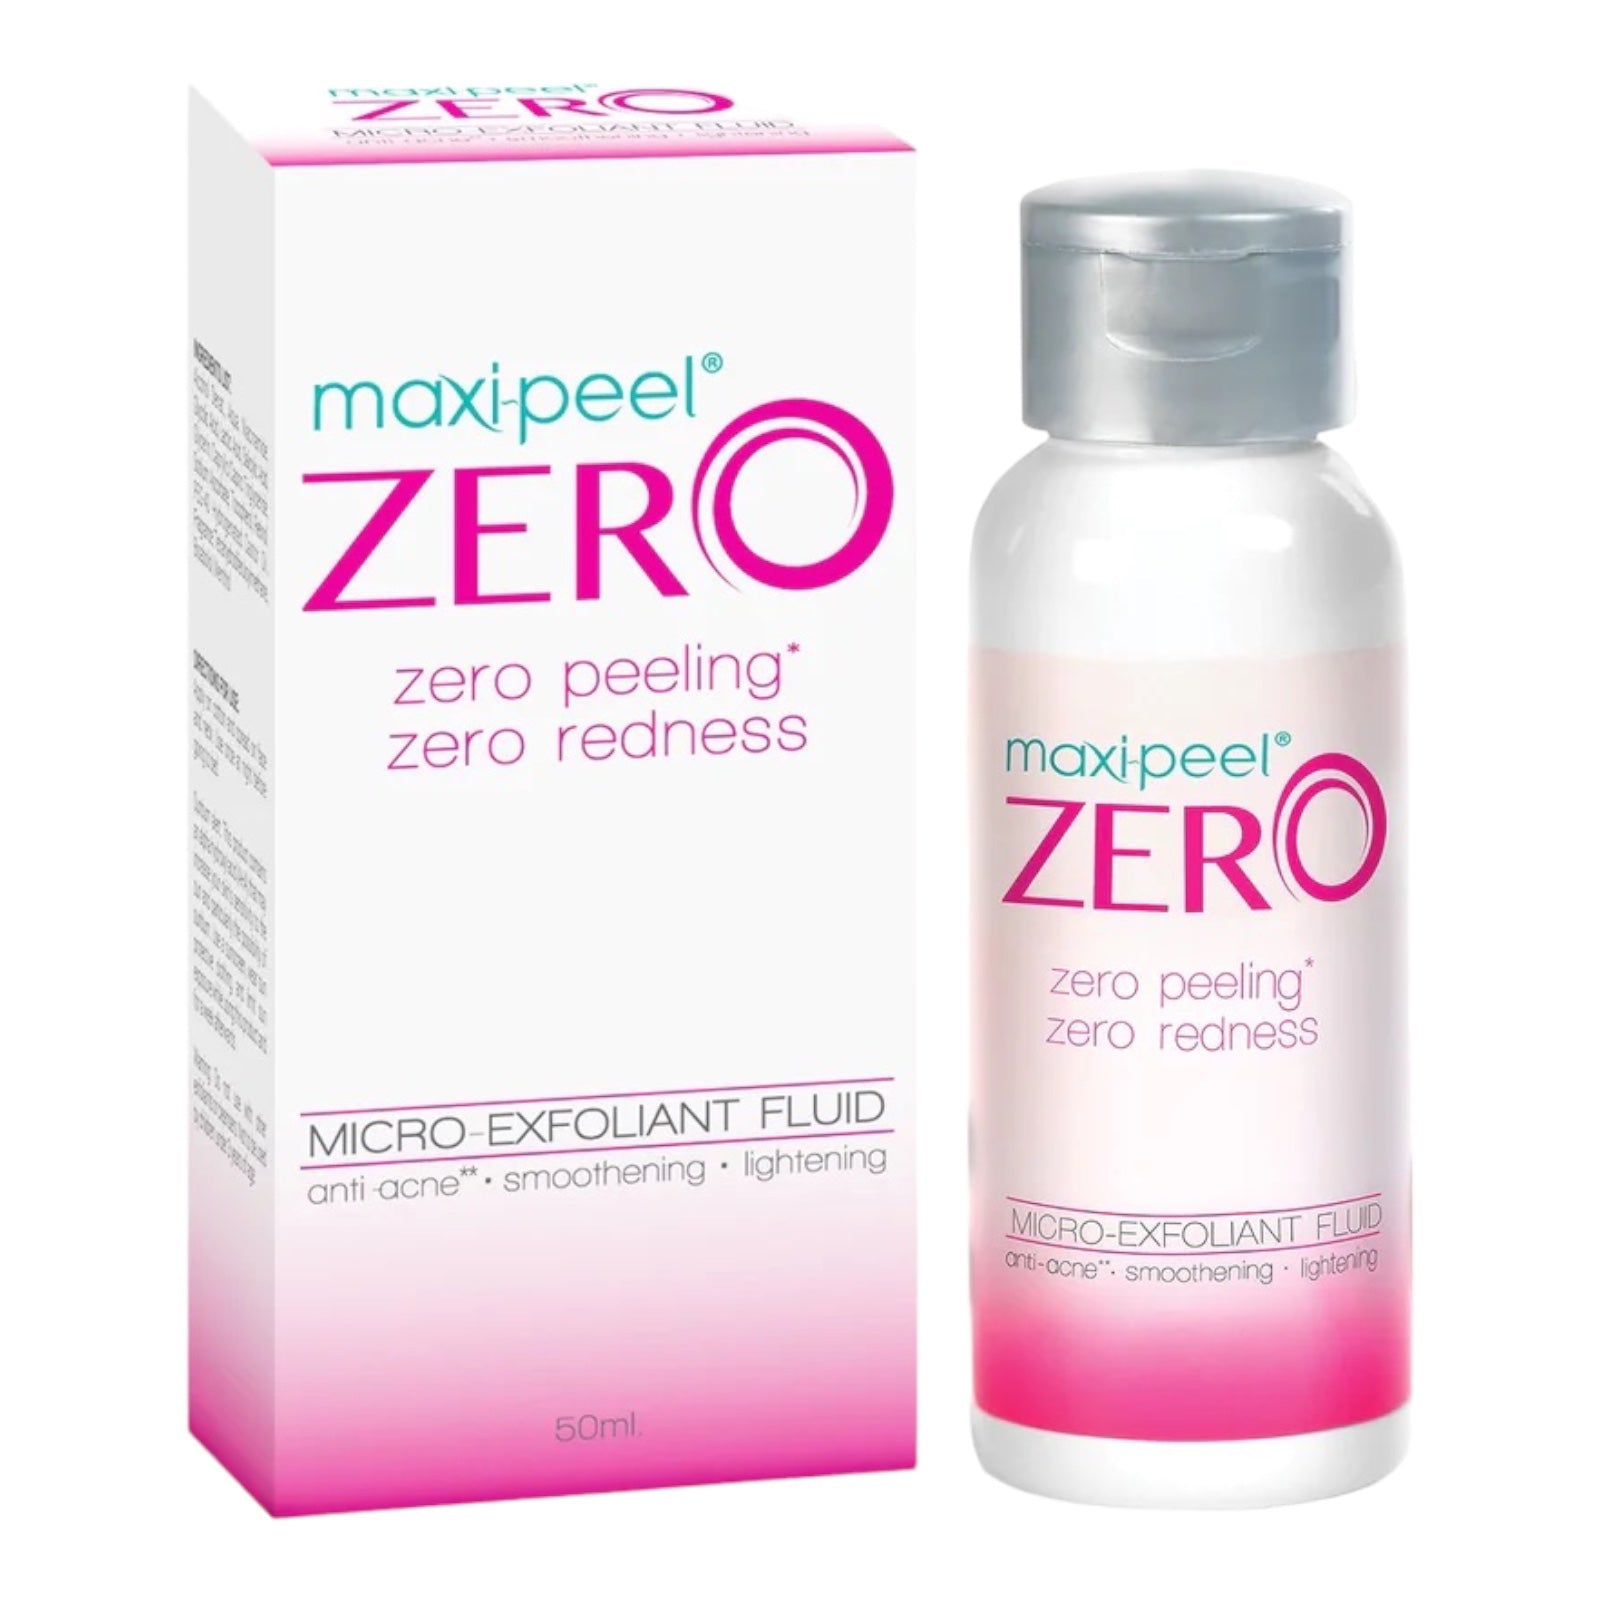 Maxi Peel - ZERO - Zero Peeling - Zero Redness - Micro Exfoliant Fluid - Anti Acne Smoothening Lightening - 50 ML